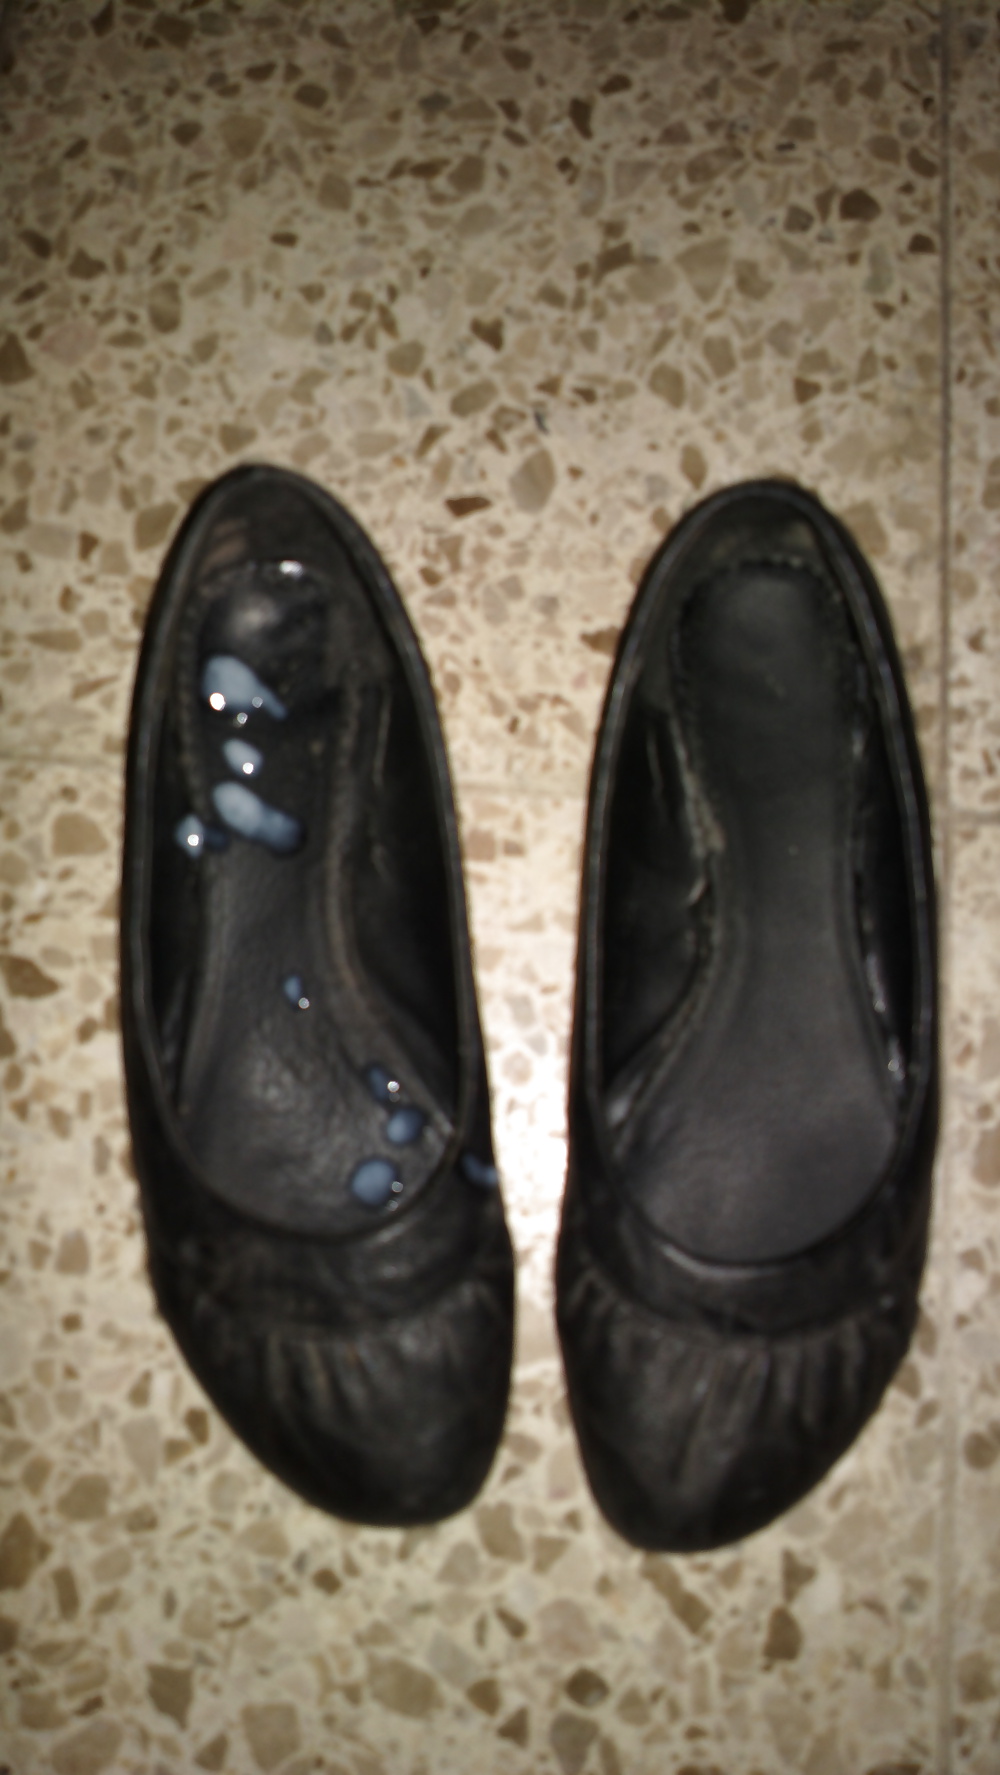 Cum on shoes of neighborhood nachbarschafts schuhe bespritzt #8039826